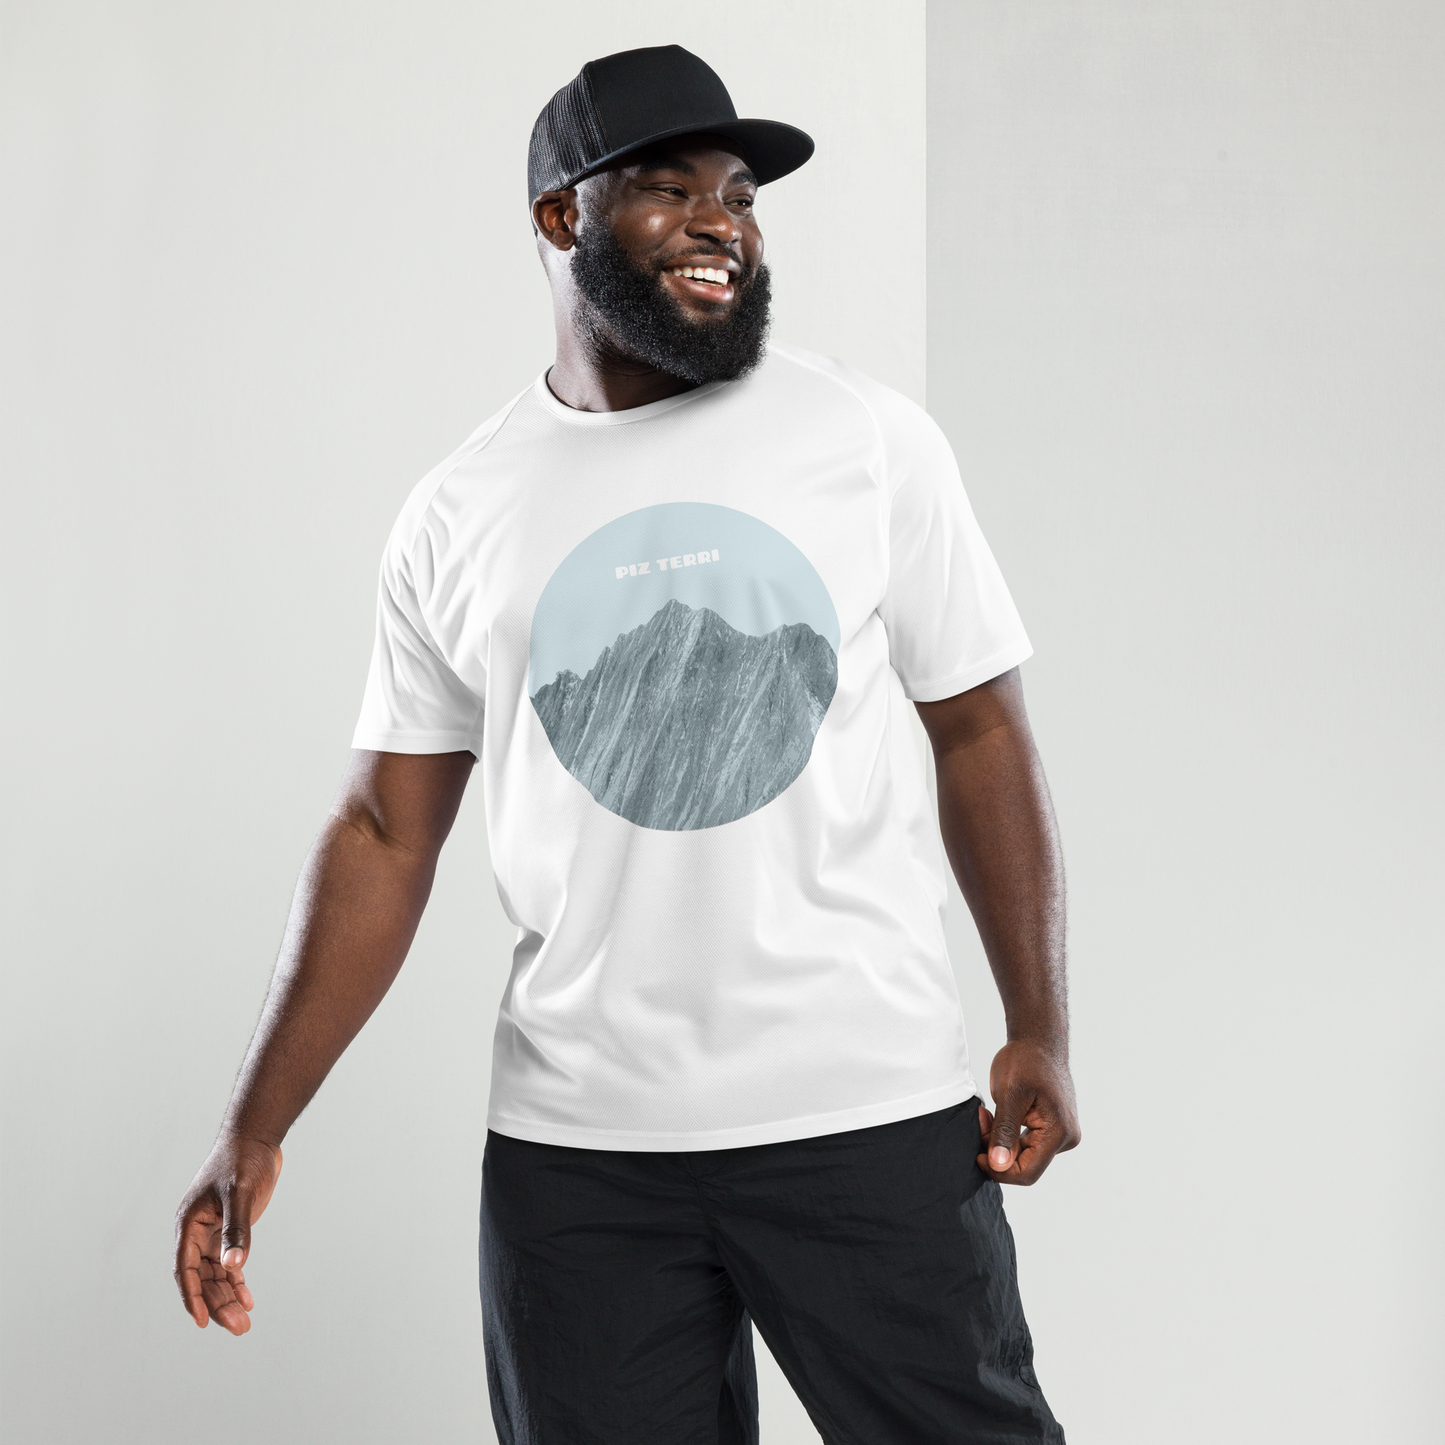 Fröhlicher Mann mit einem weissen Herren-Sport-Shirt mit einem Print der den Piz Terri in Graubünden zeigt. 